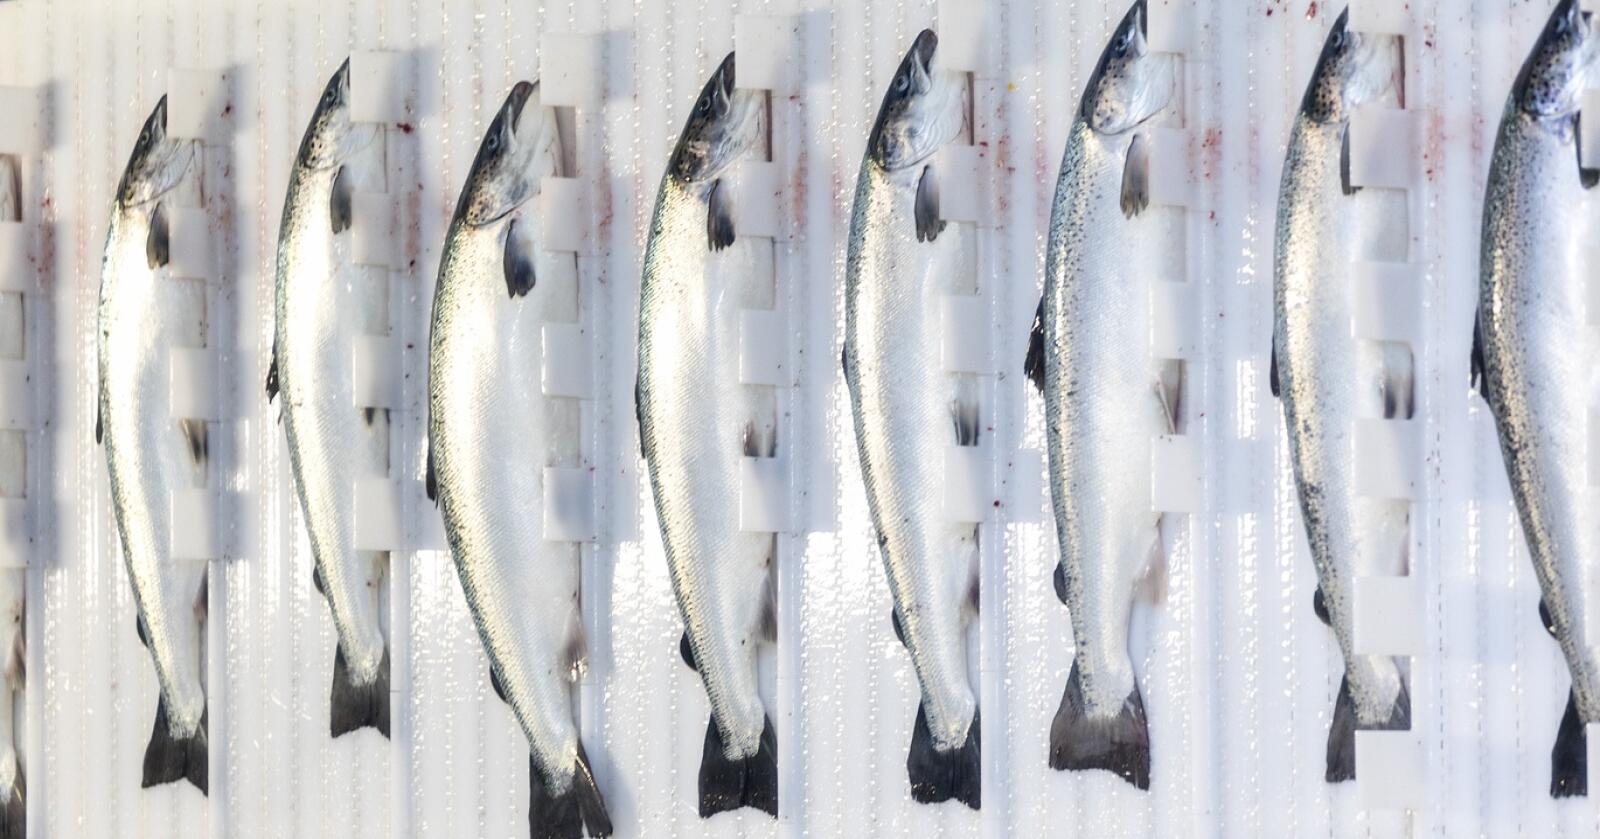 – 95 prosent av fiskefôret i norsk oppdrettsnæring er basert på import fra andre siden av kloden. Vi må bli mer selvforsynte, sier professor ved NMBU, Margareth Øverland. Illustrasjonsfoto: Mostphotos